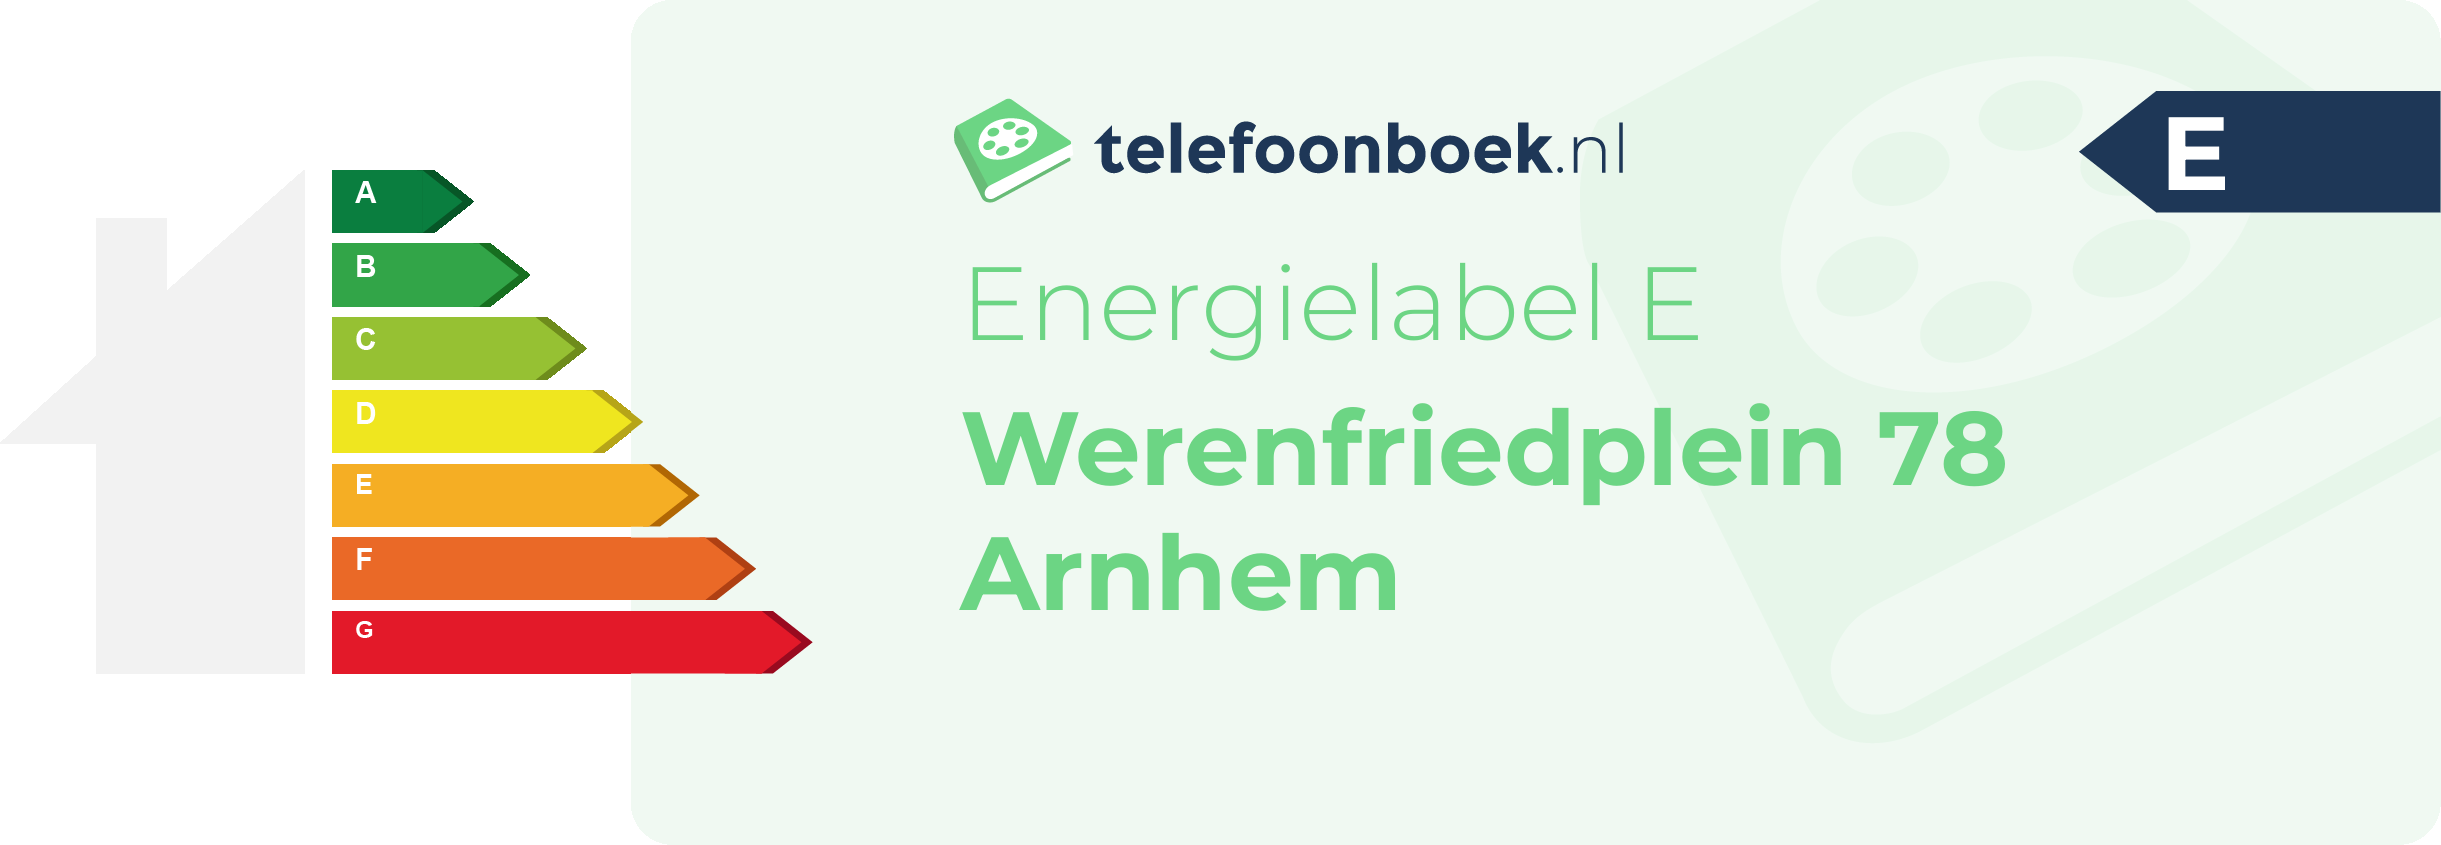 Energielabel Werenfriedplein 78 Arnhem